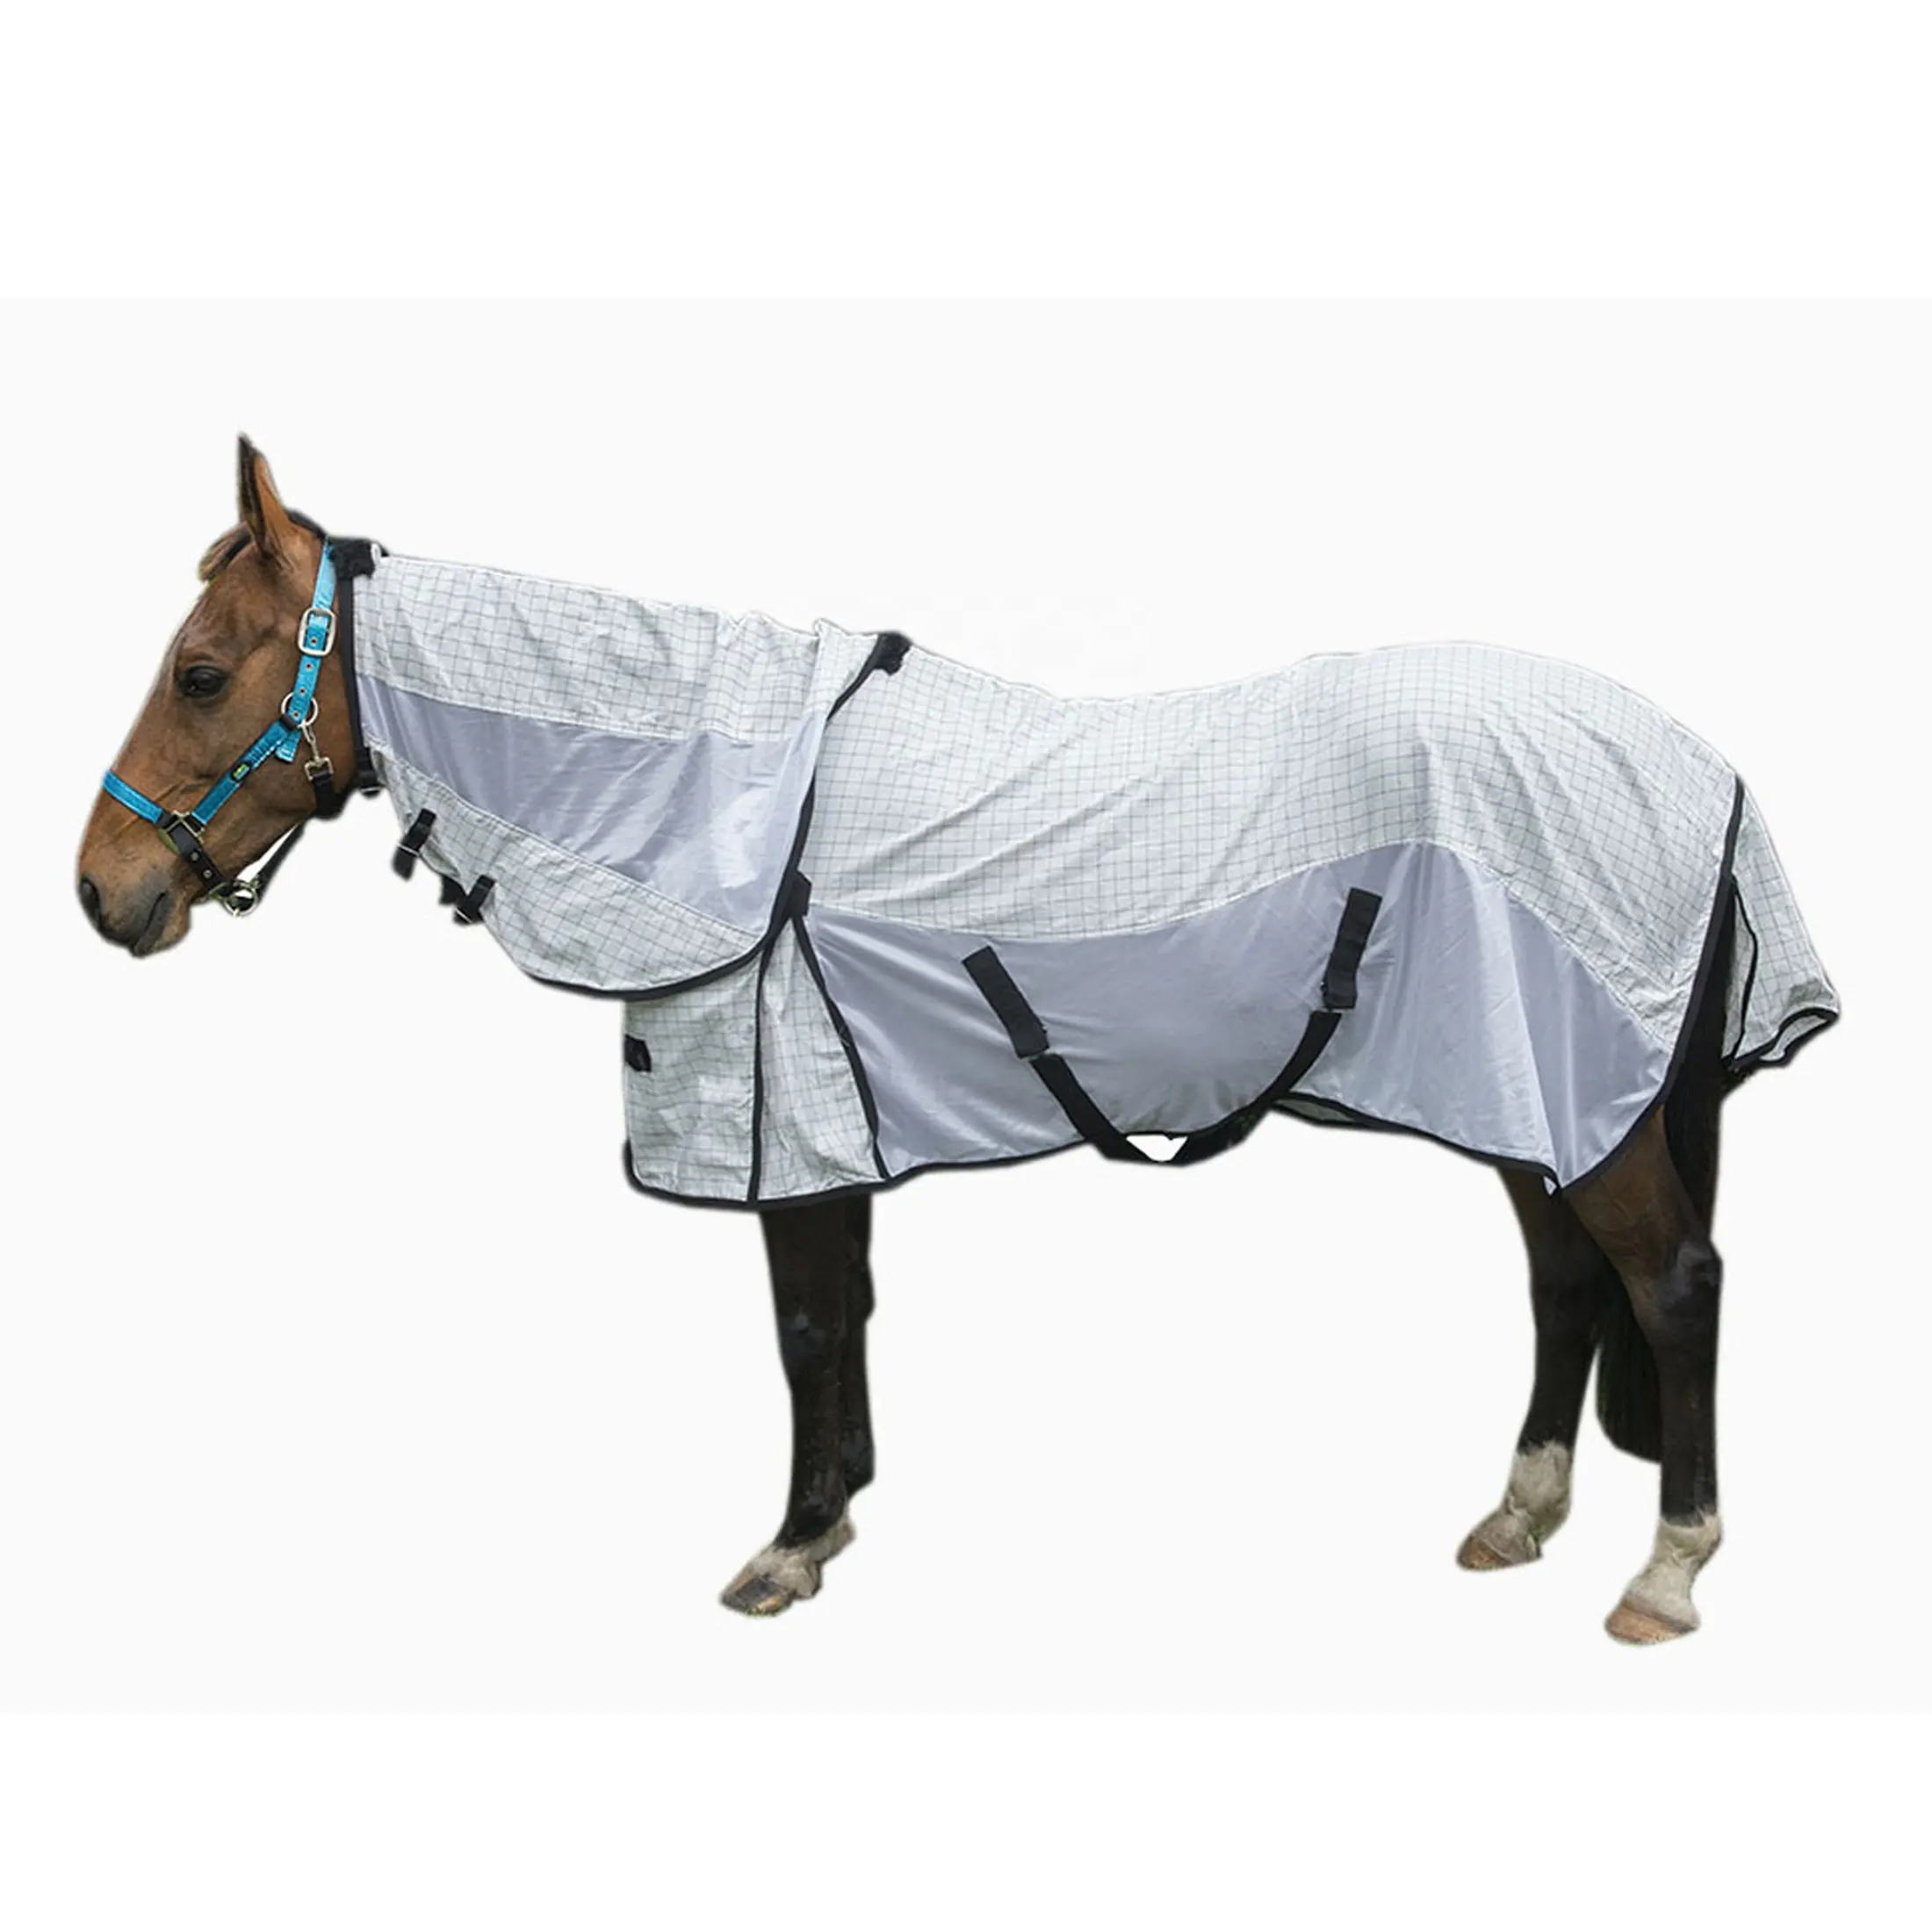 Mantas de diseño Popular, equipo de caballos, ropa ecuestre transpirable, alfombras de malla para caballos, Alfombra de protección para caballos de verano